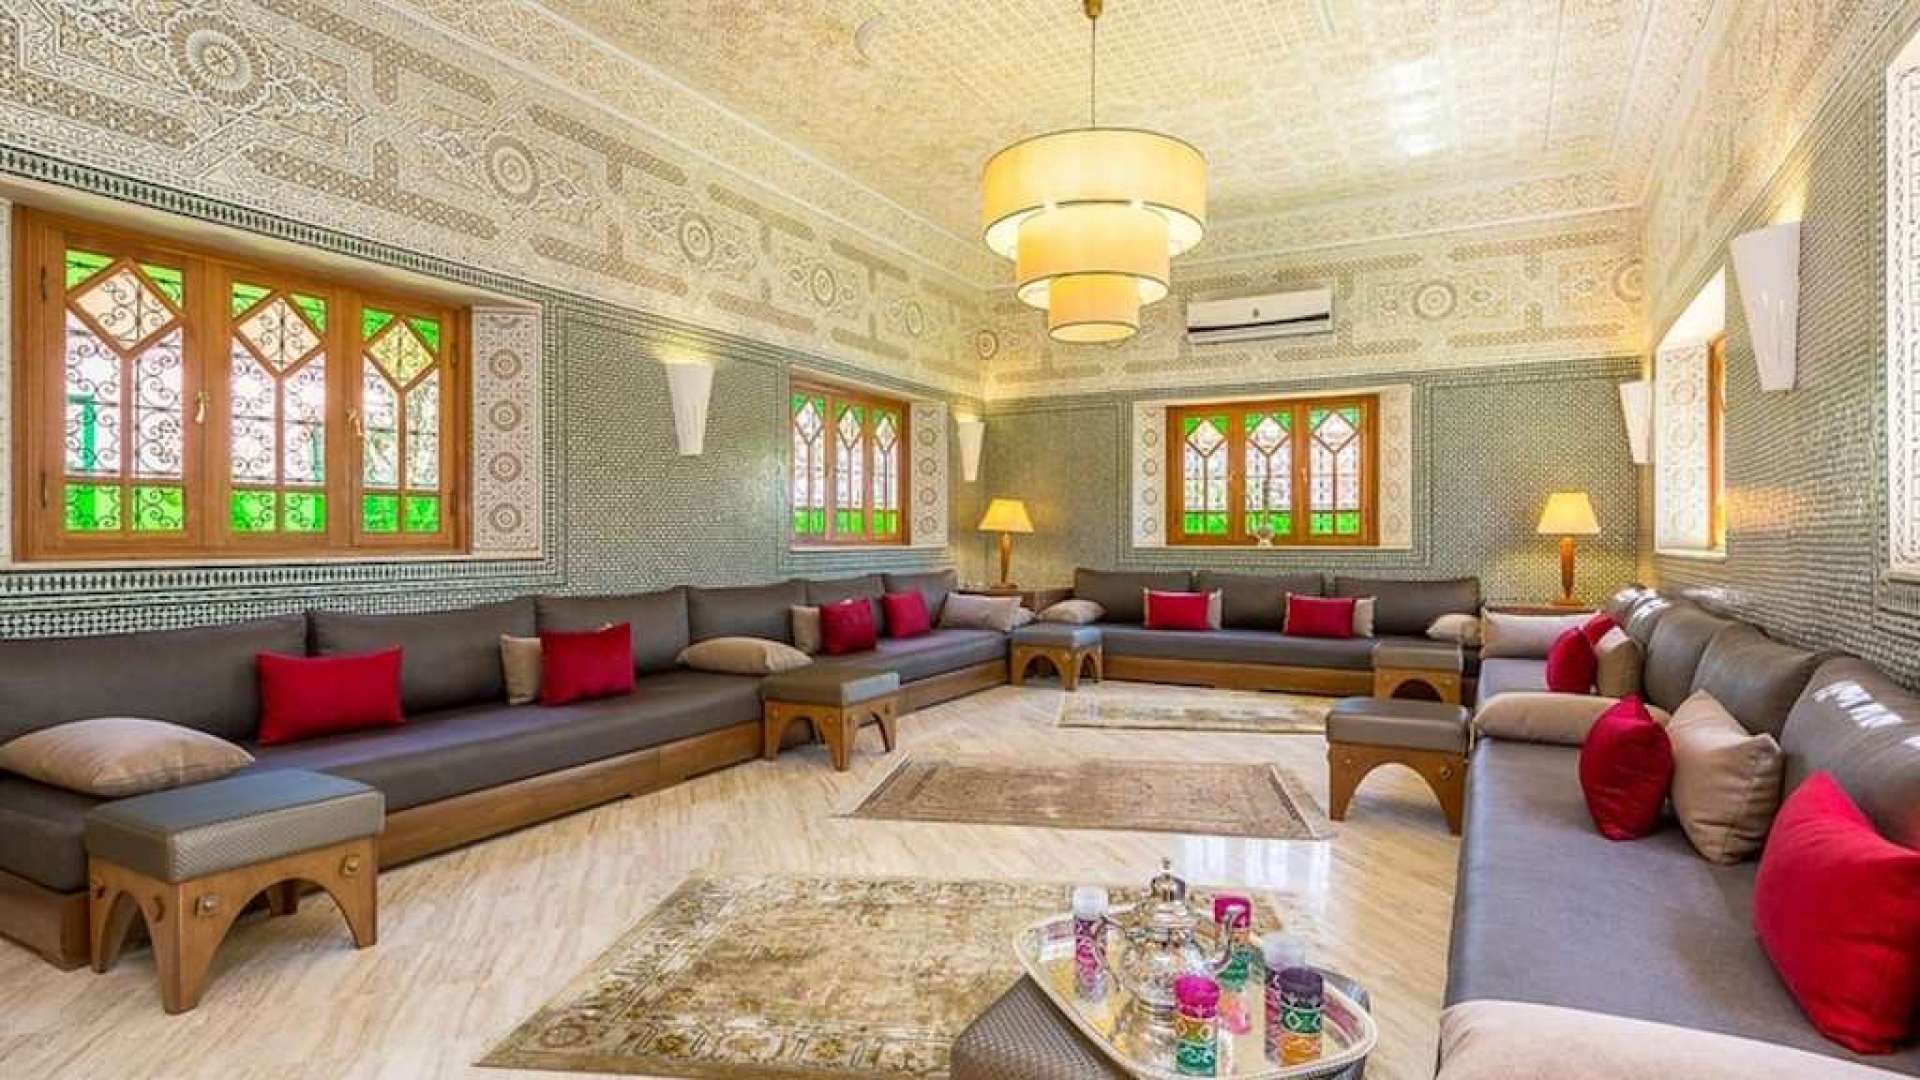 Location de vacances,Villa,Villa de Prestige 7ch dans un domaine privé à la Palmeraie,Marrakech,Palmeraie